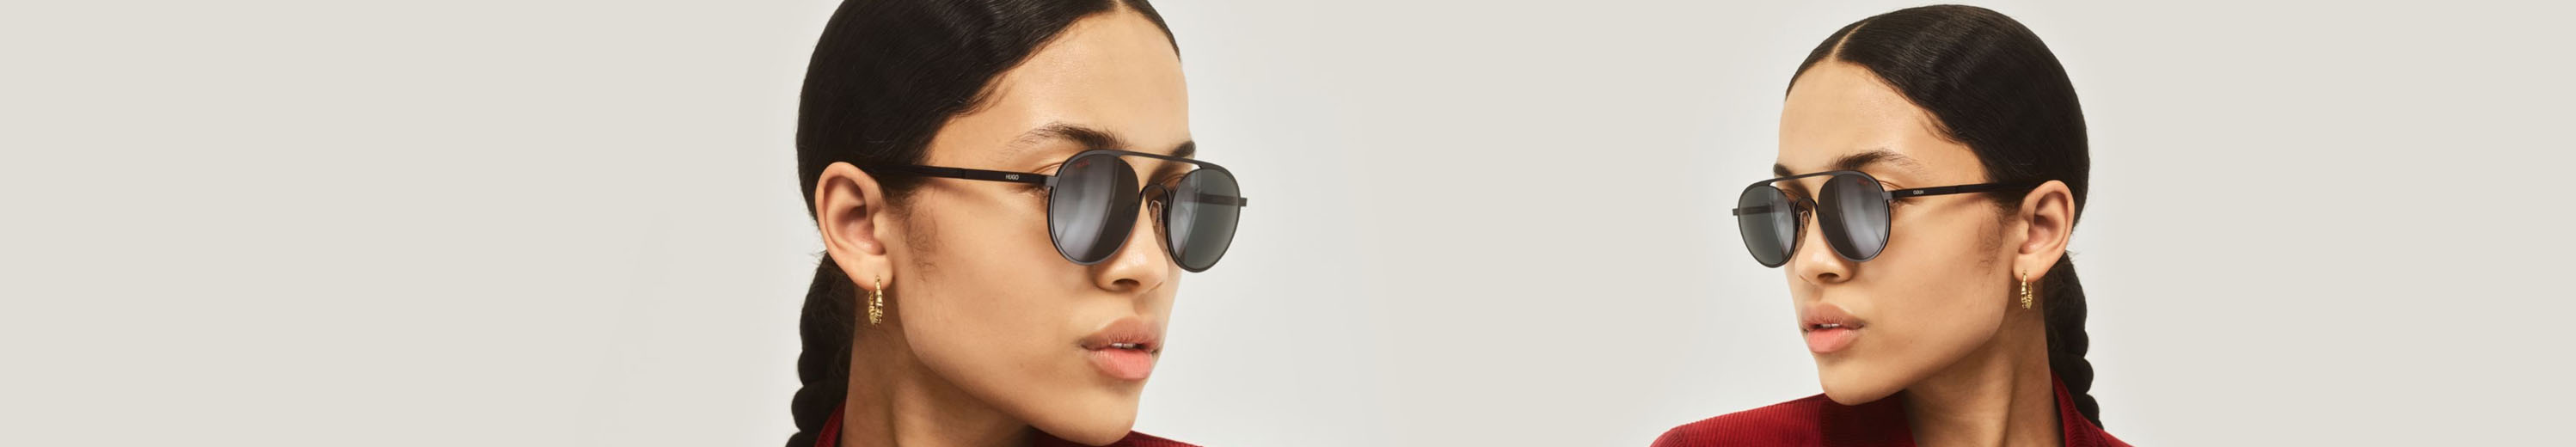 HUGO BOSS Sunglasses for Women